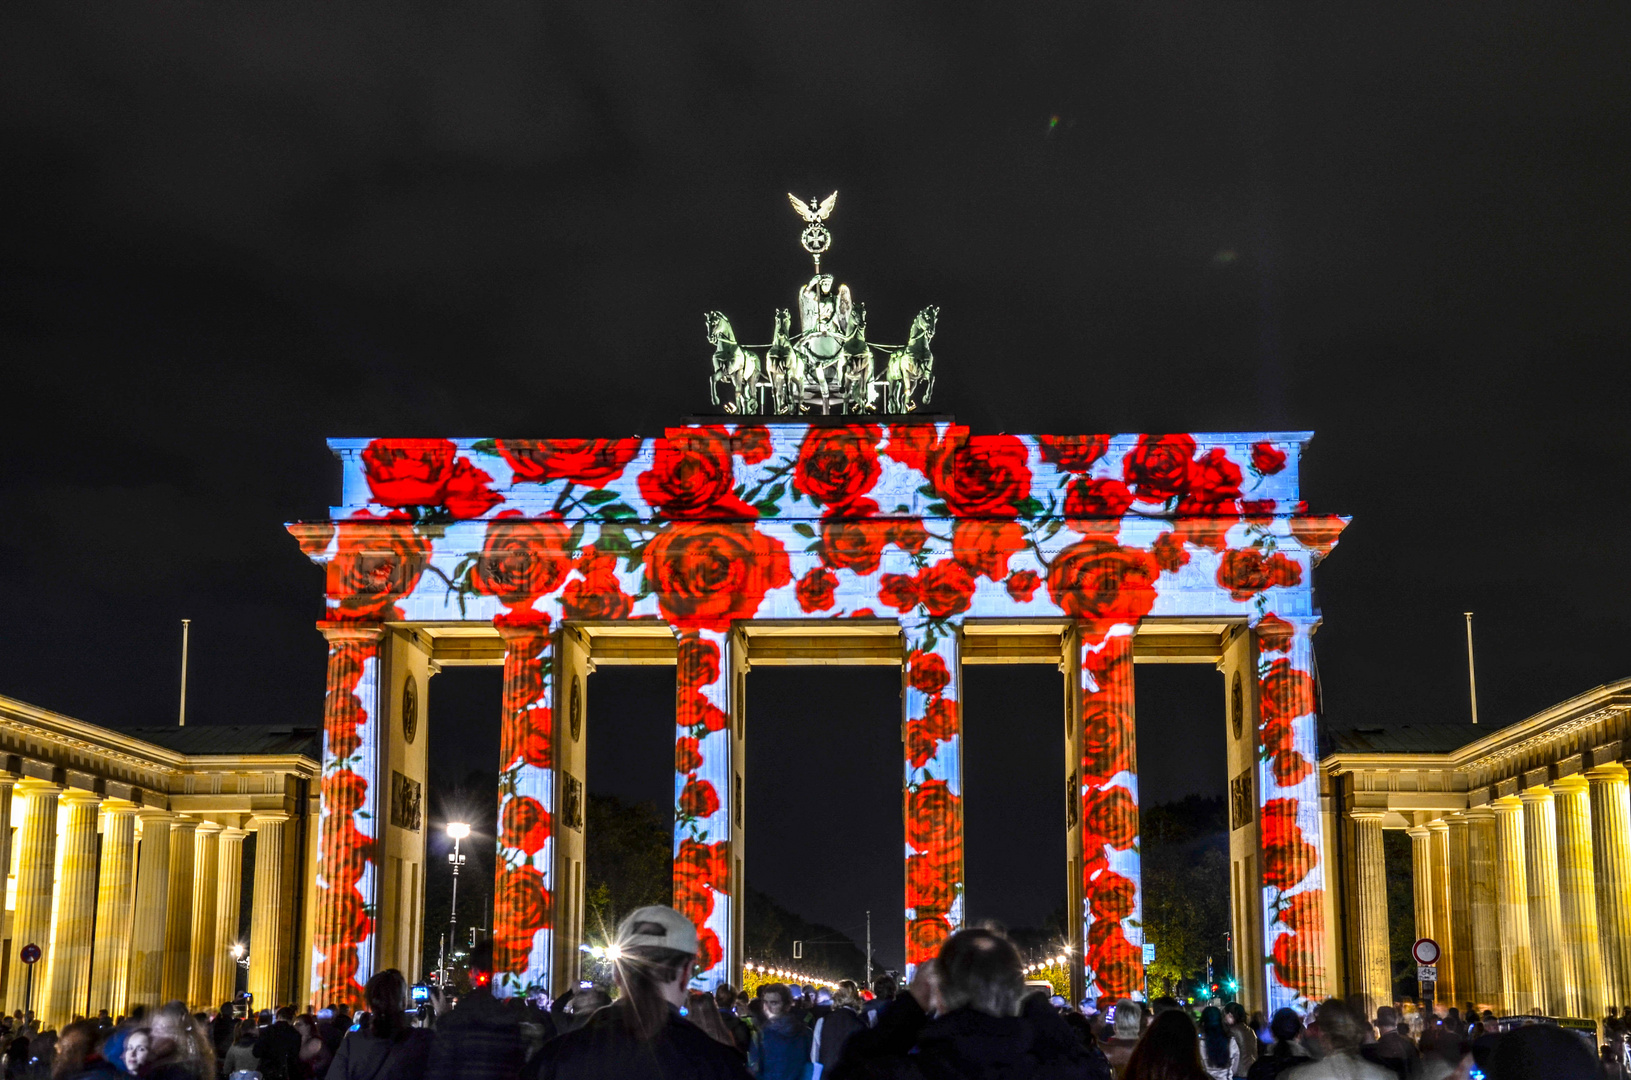 FESTIVAL OF LIGHTS Berlin